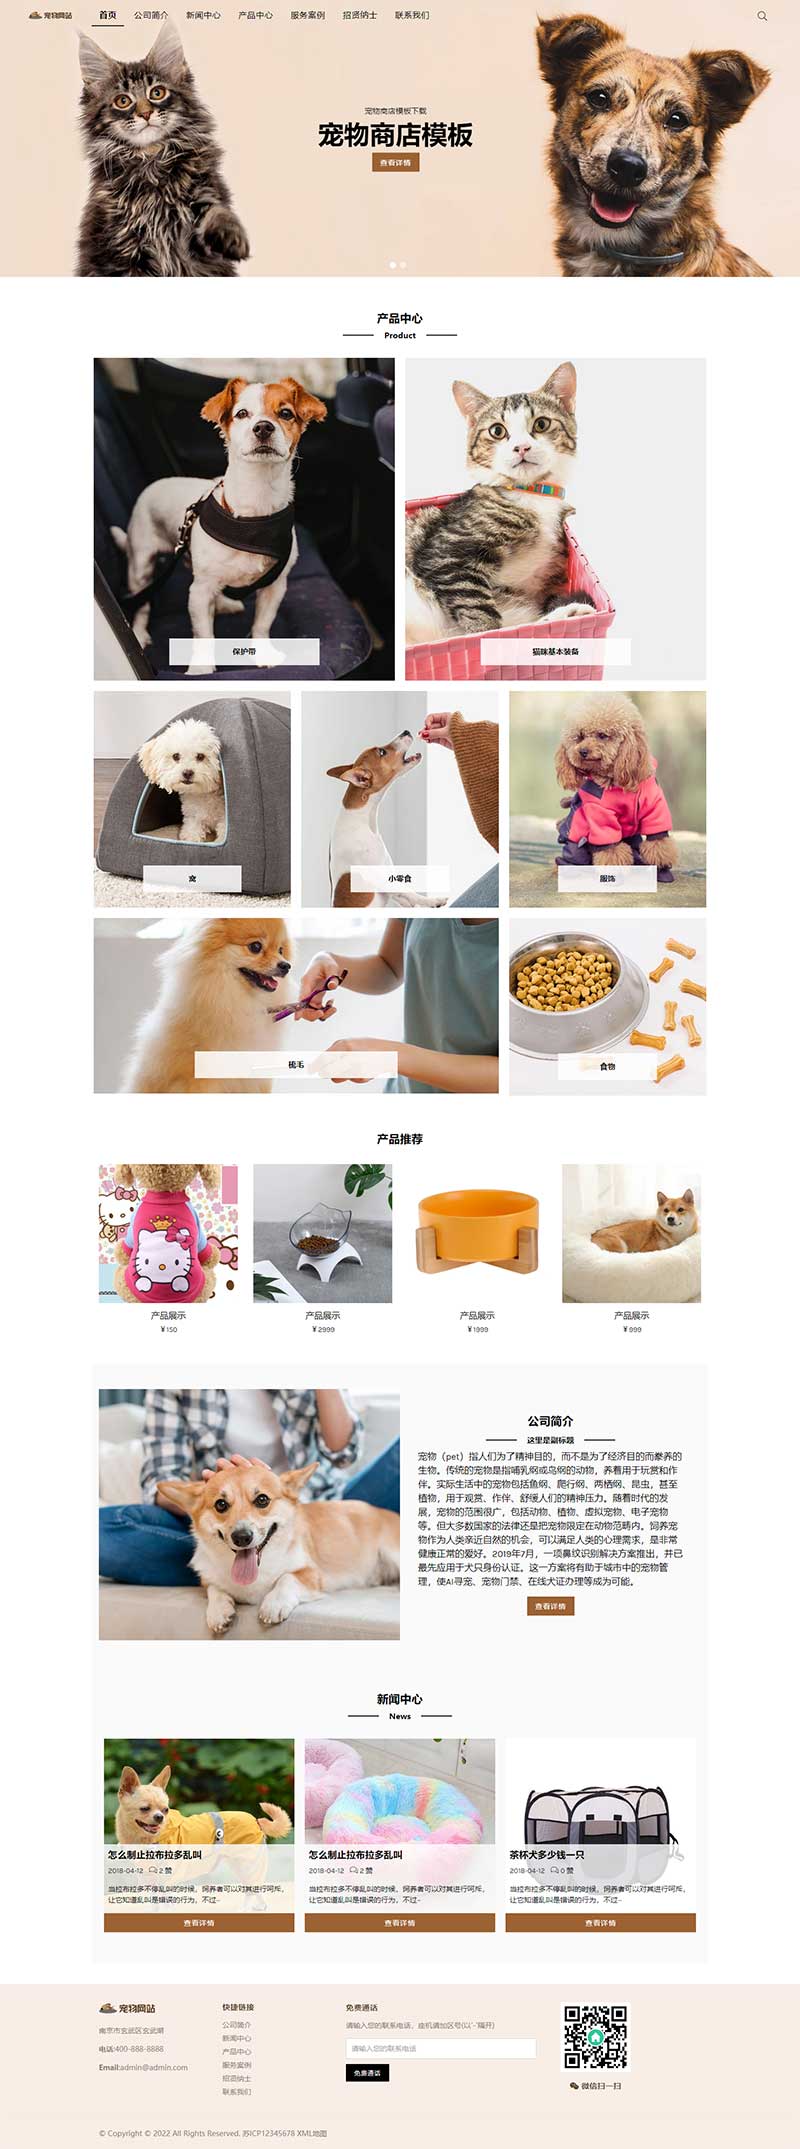 (自适应手机端)html5响应式宠物商店宠物行业类型网站源码电脑端展示图片